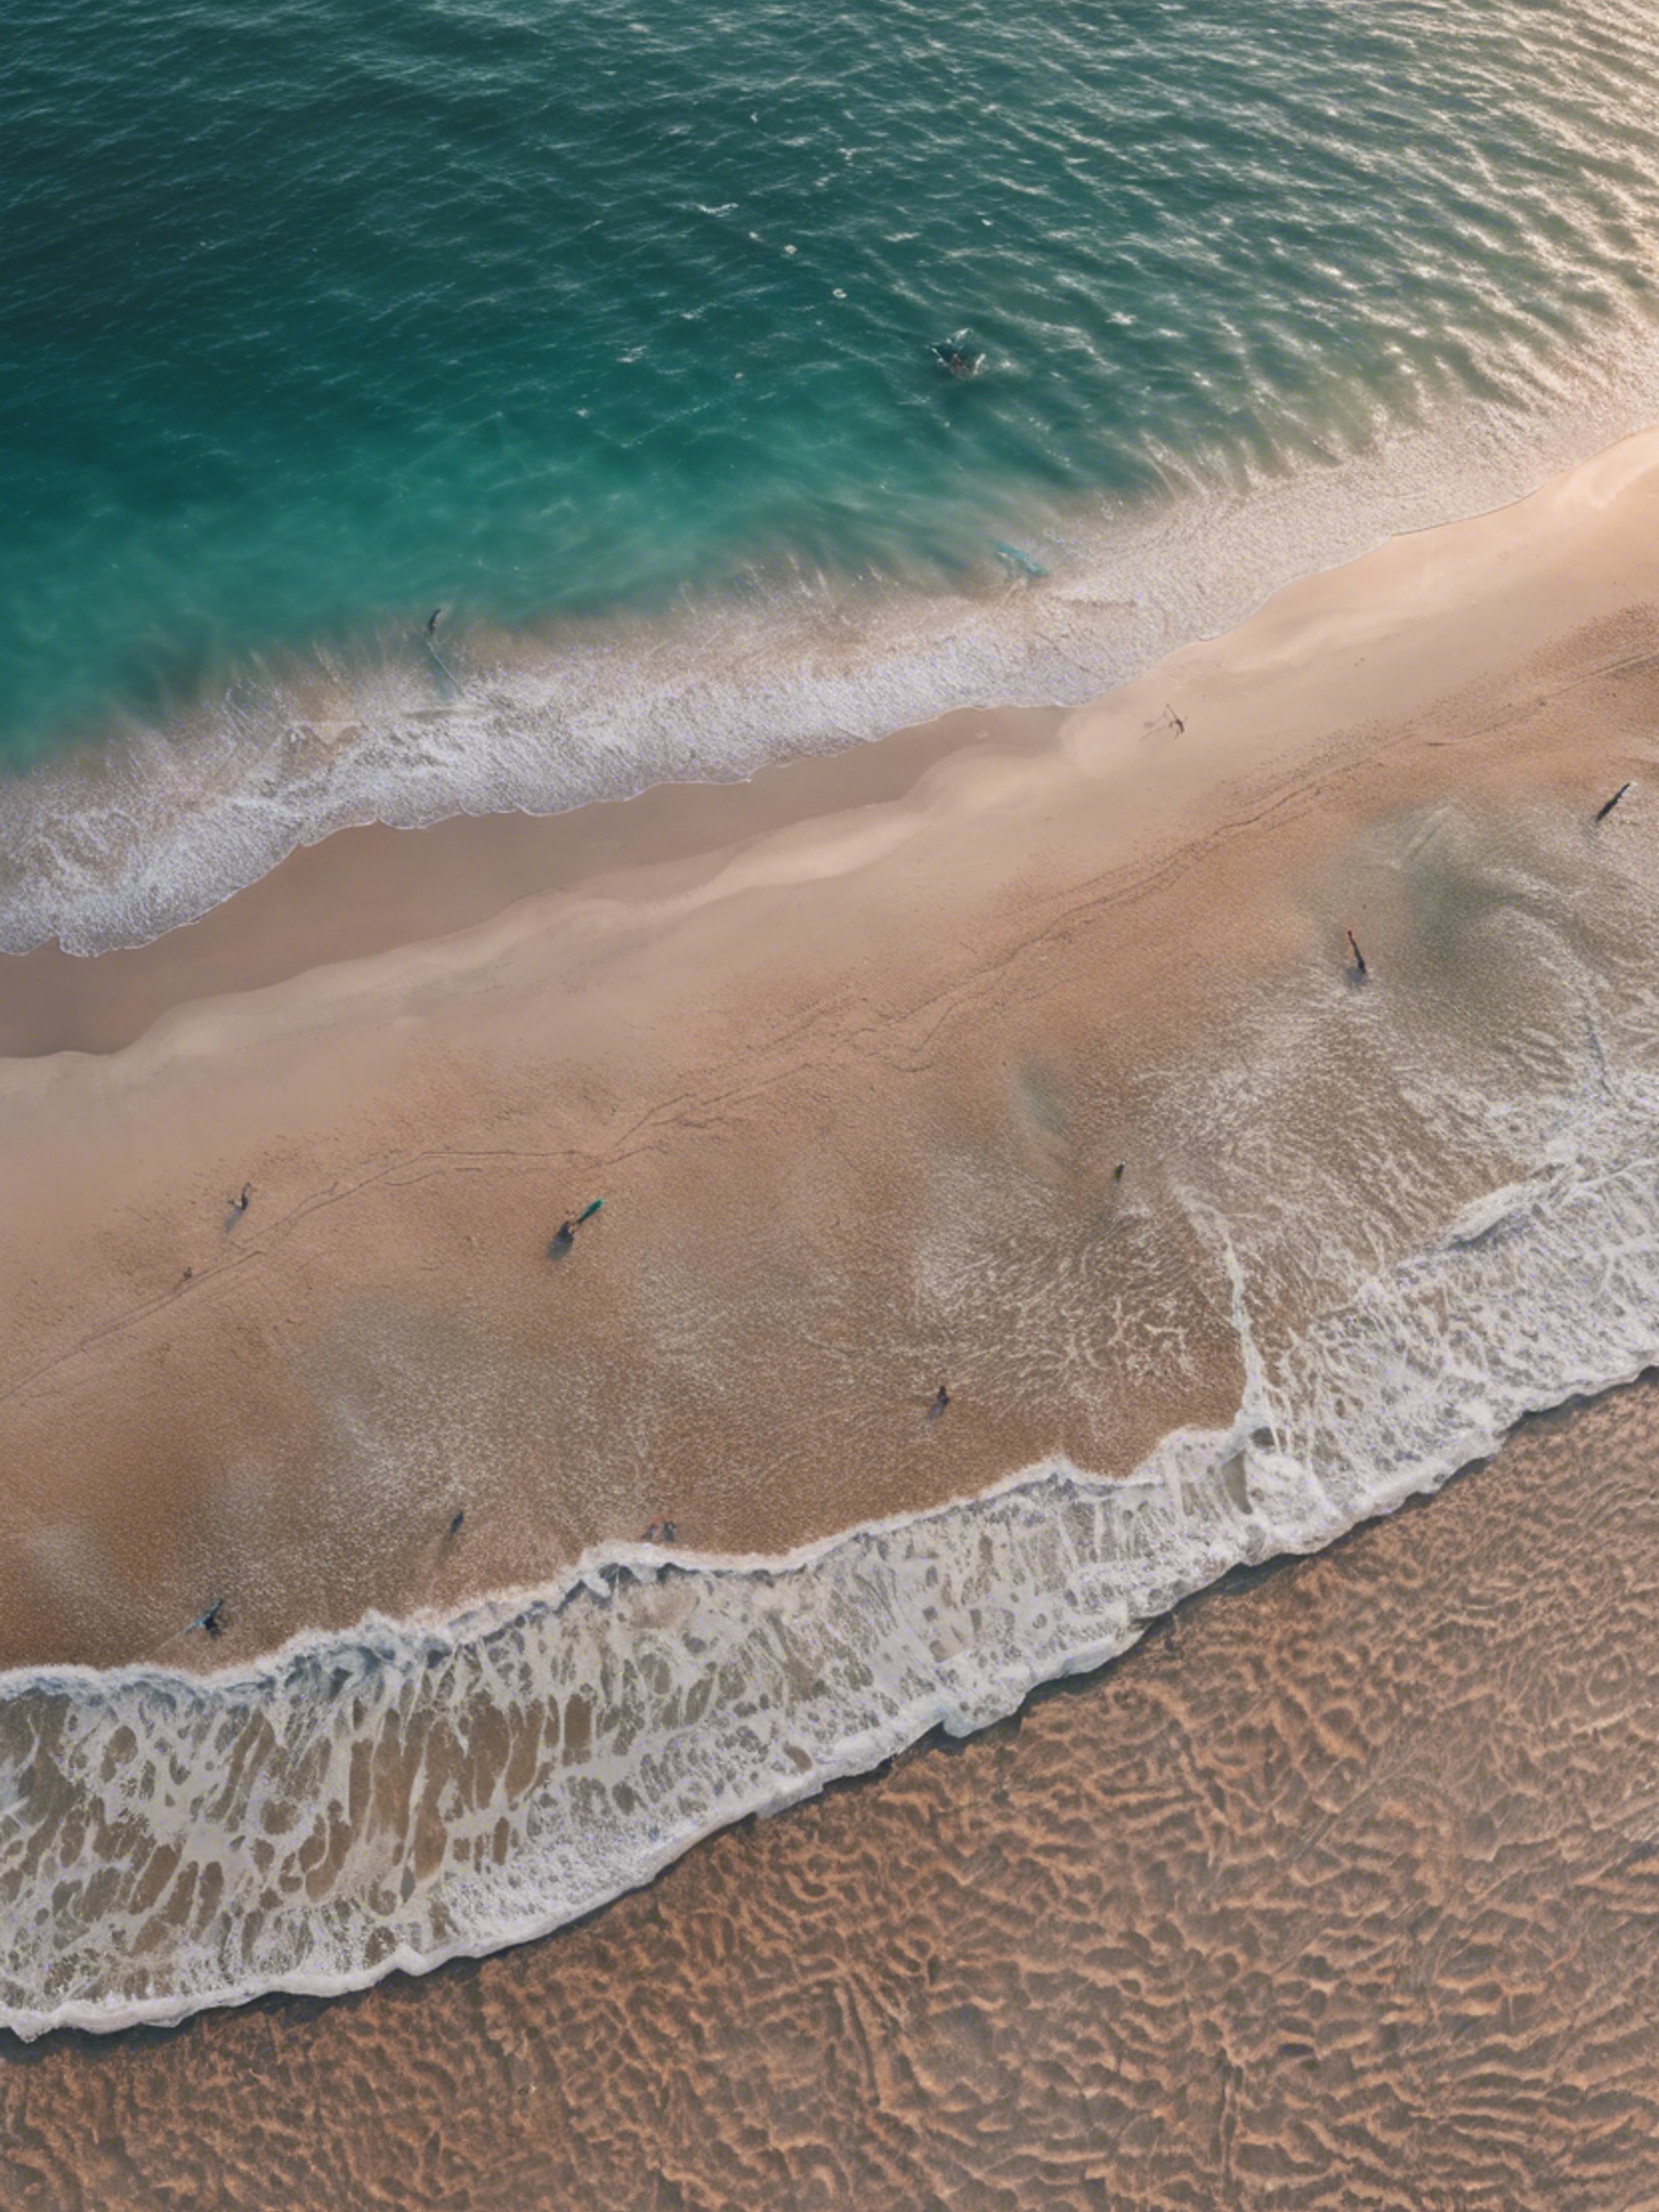 An aerial view of a cool teal sea meeting a sandy beach during dawn.壁紙[fa6d444f65d7448095dd]